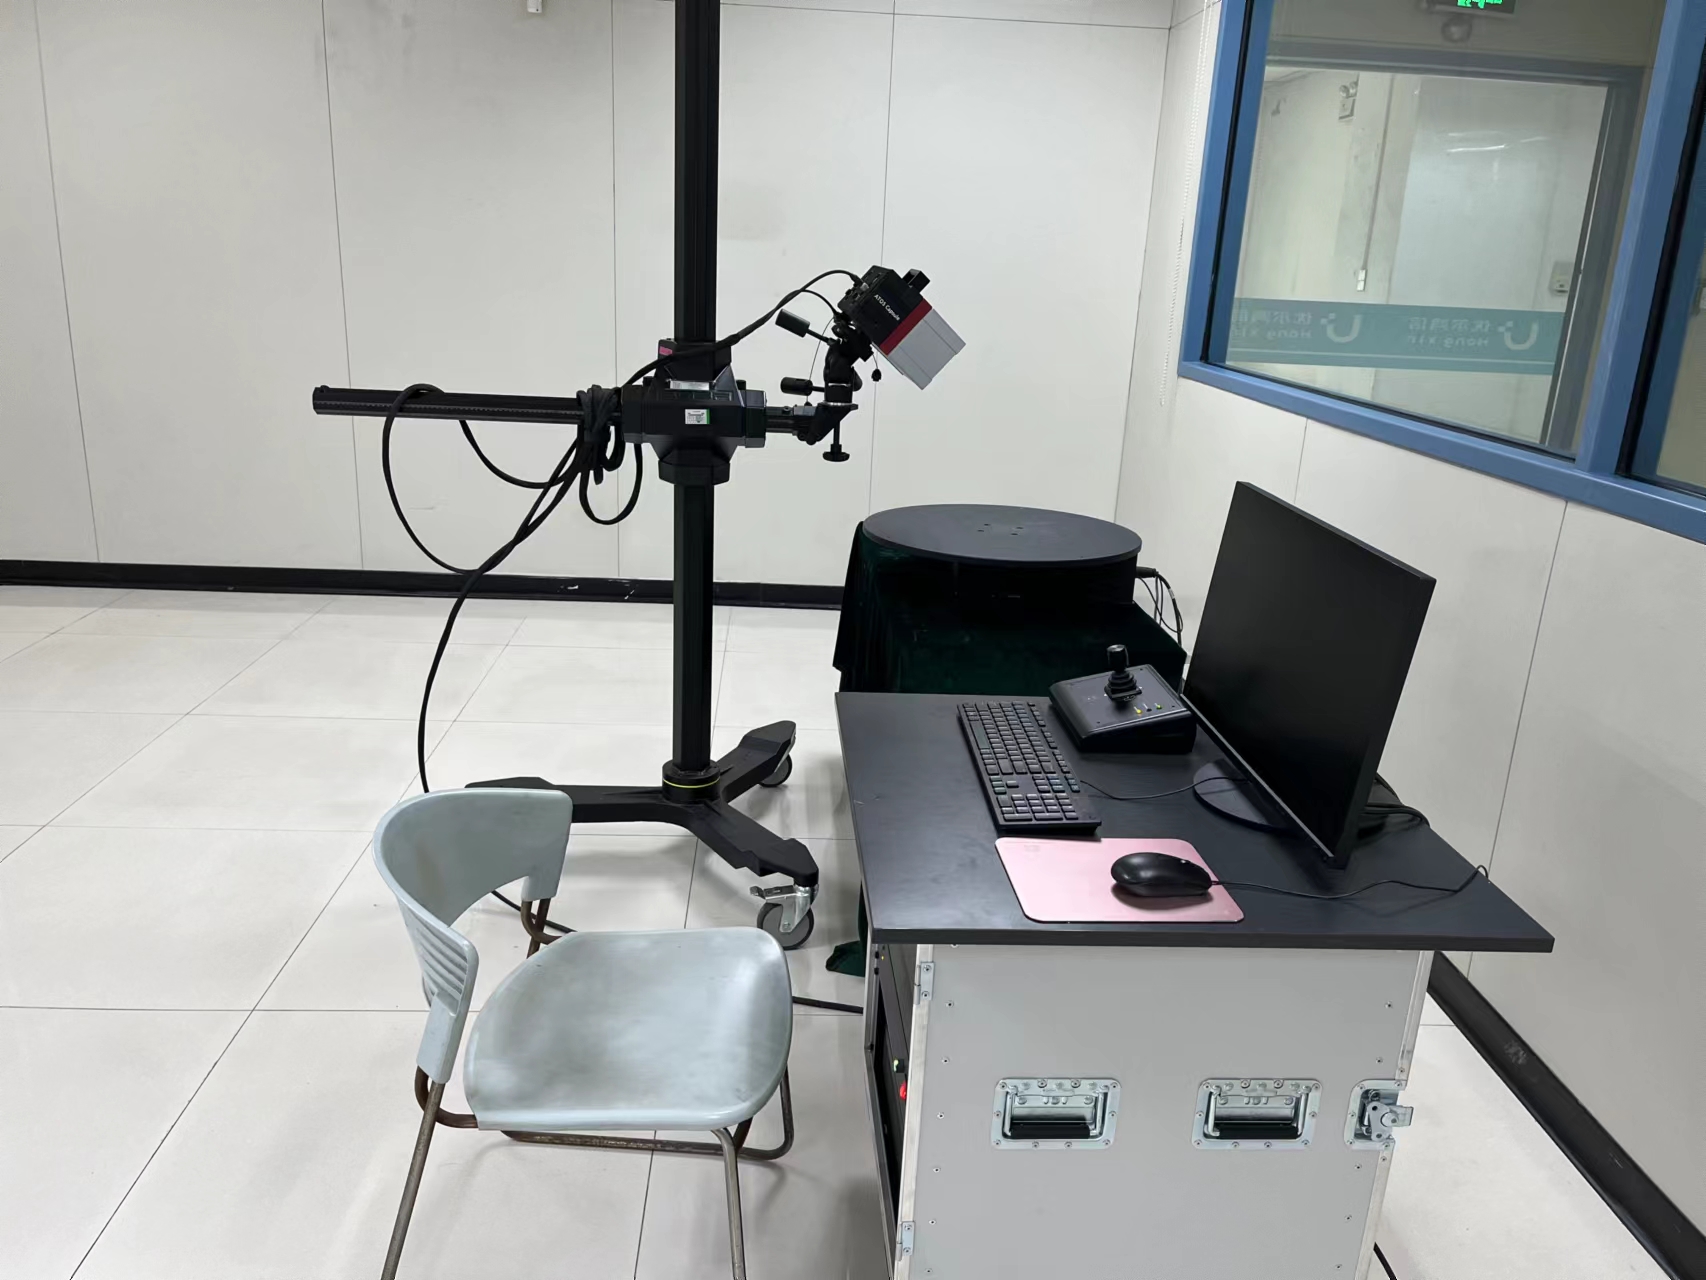 VR眼镜固定件尺寸检测-三坐标尺寸测量CNAS资质-三次元检测-综合性第三方检测 3D扫描测试图片